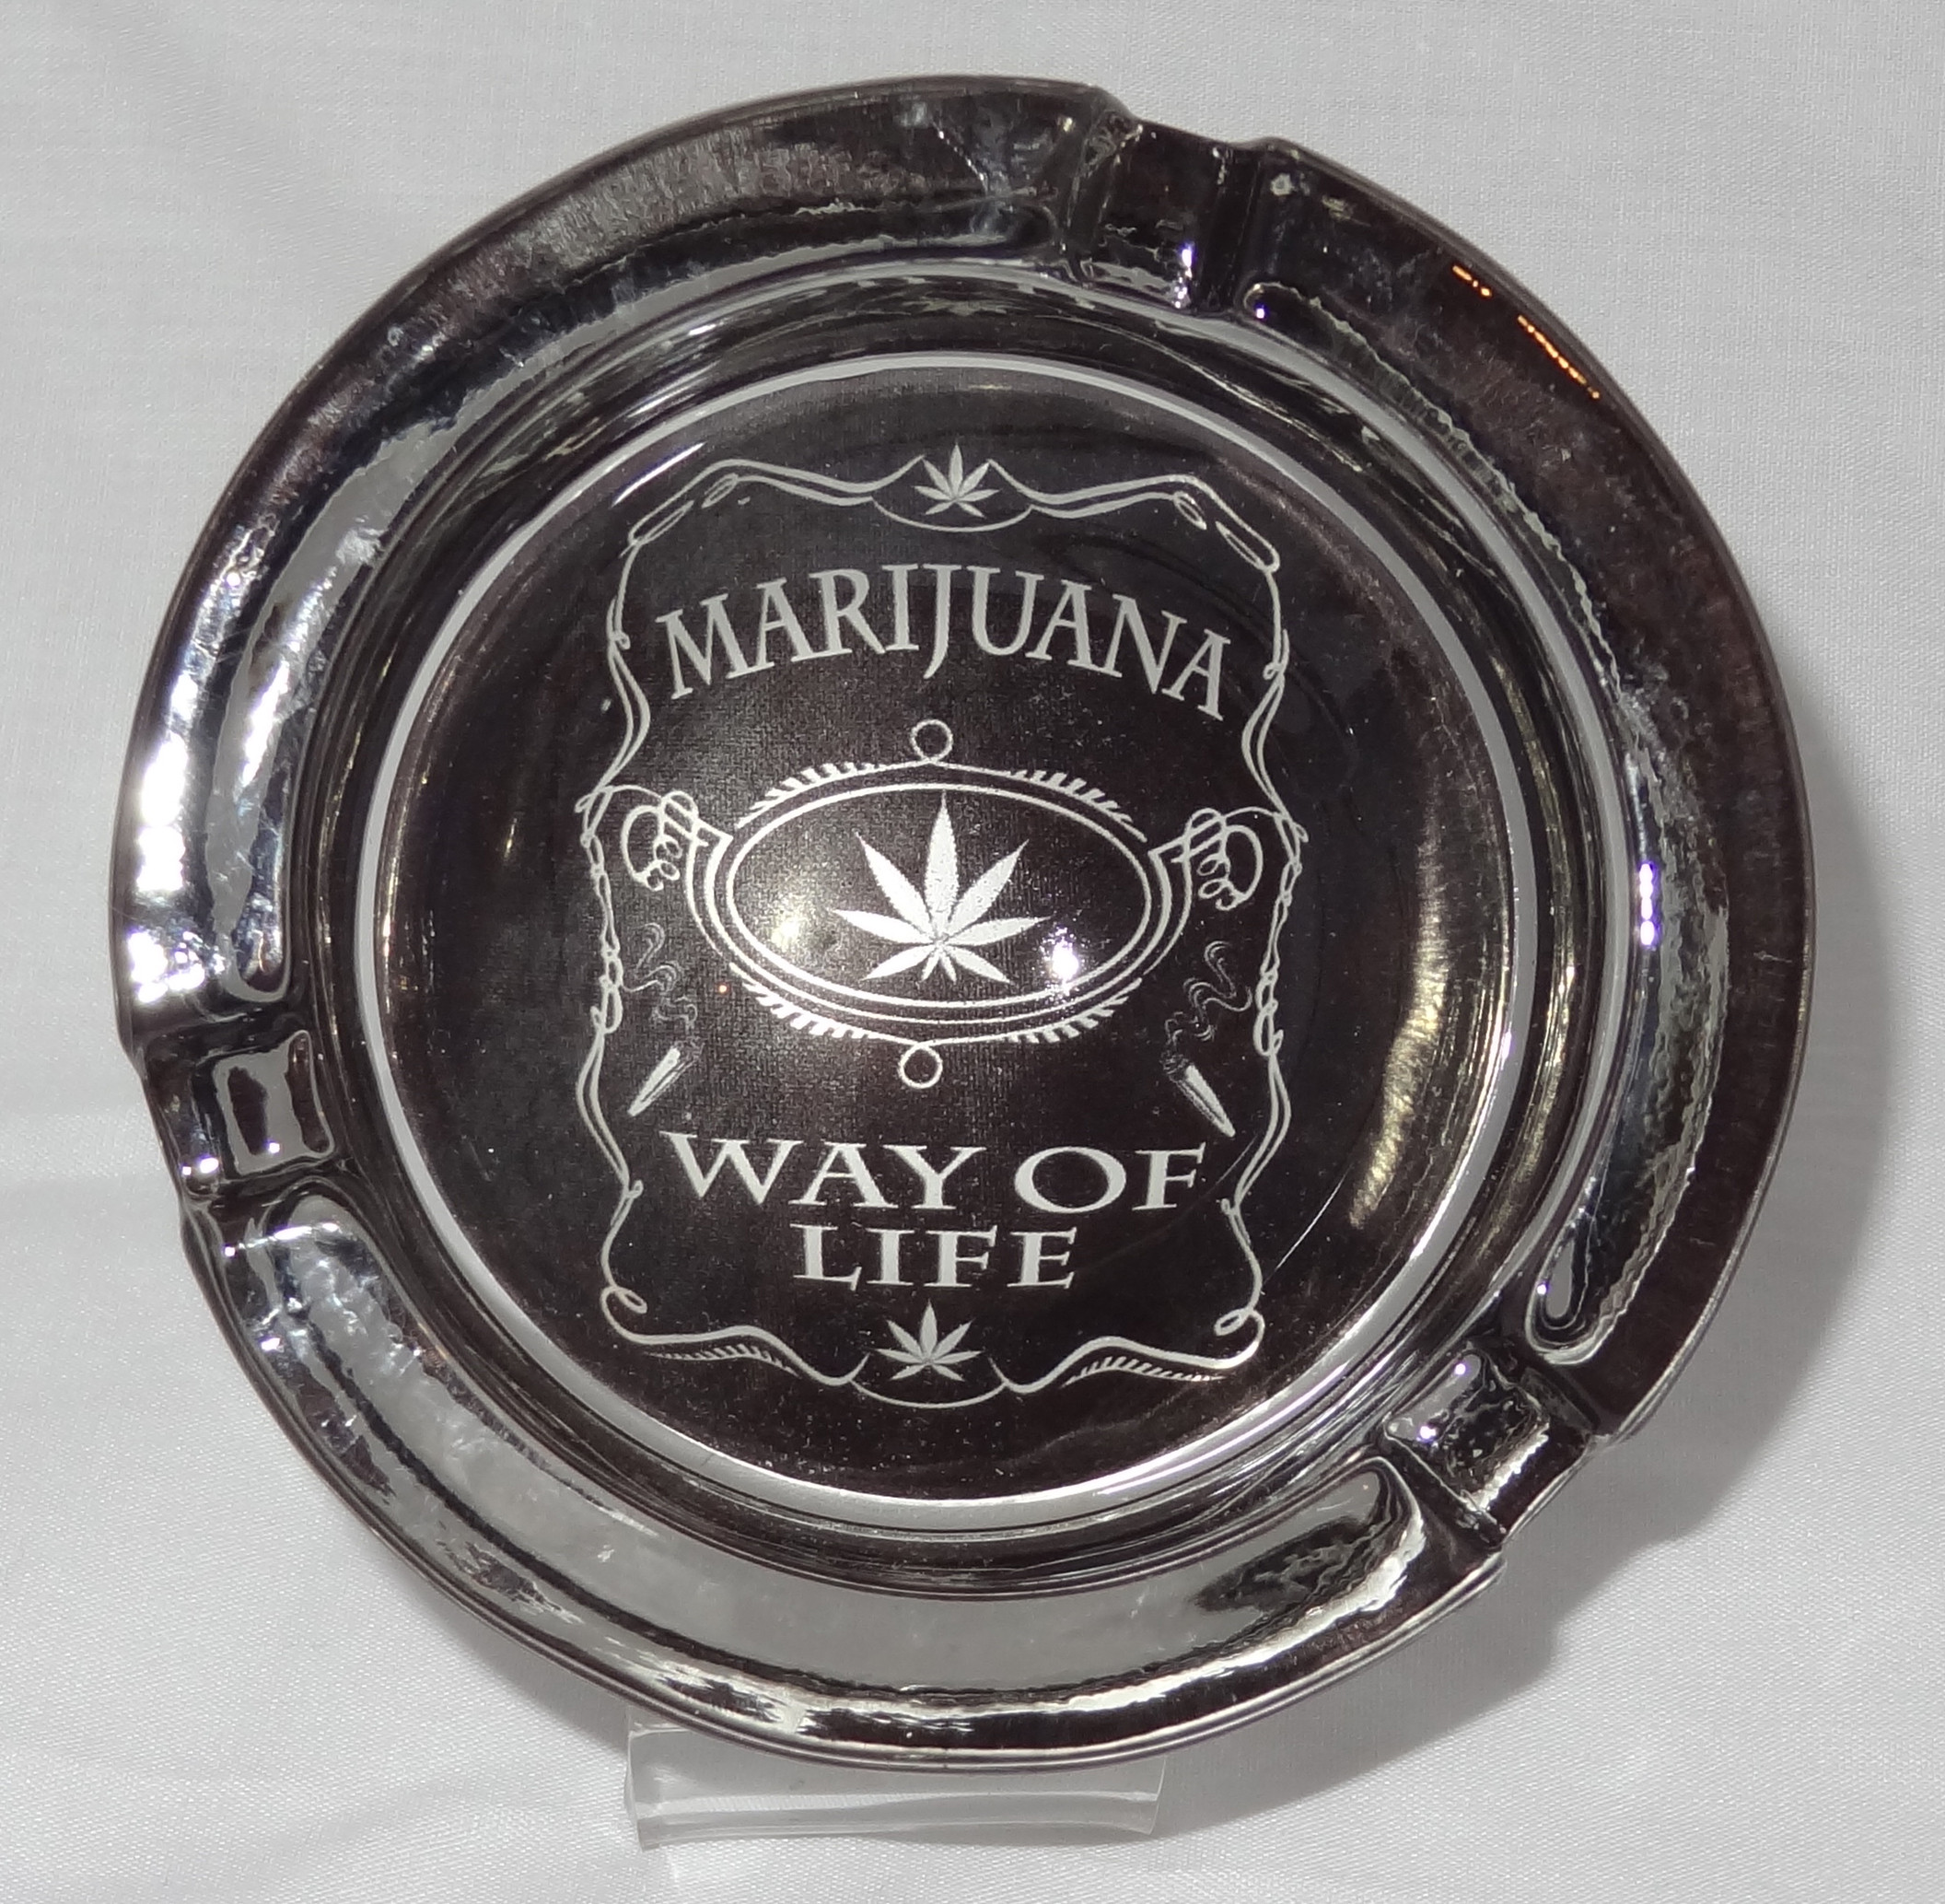 Small Round ASHTRAY - marihuana way of life black